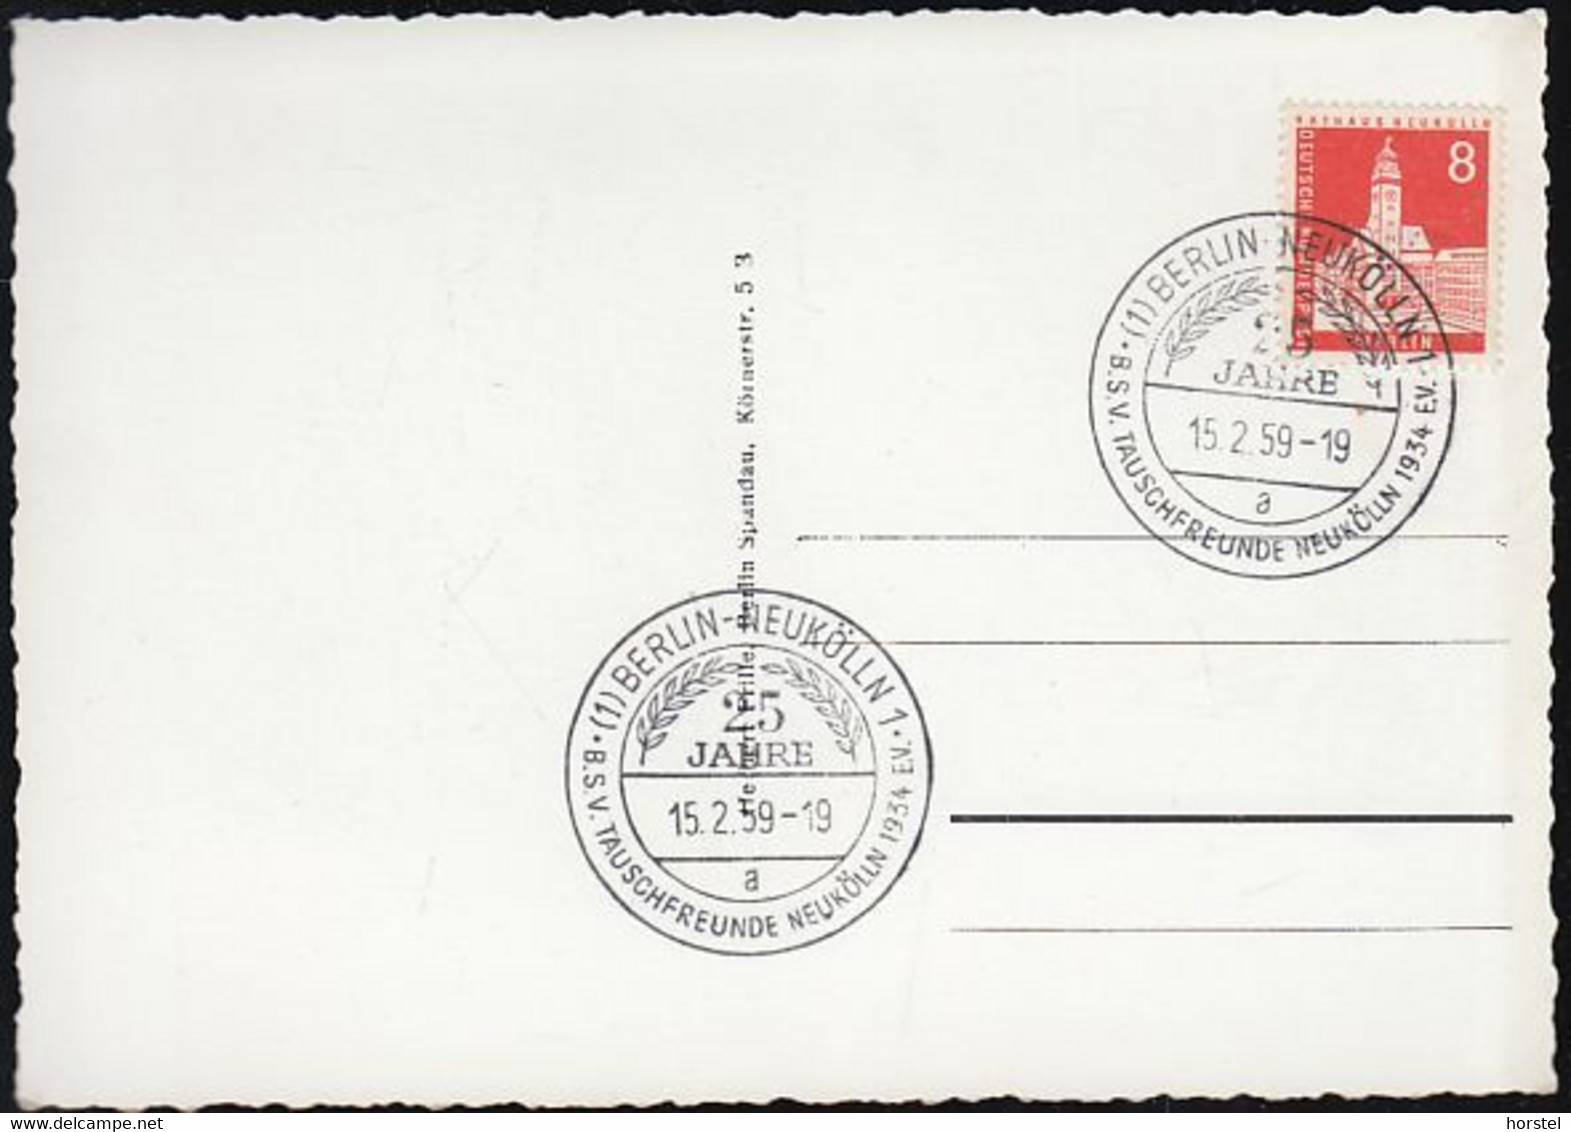 D-12043 Berlin - Rathaus Neukölln - Alte Ansicht 1959 - Nice Stamp "Rathaus" - Sonderstempel  ! - Neukoelln